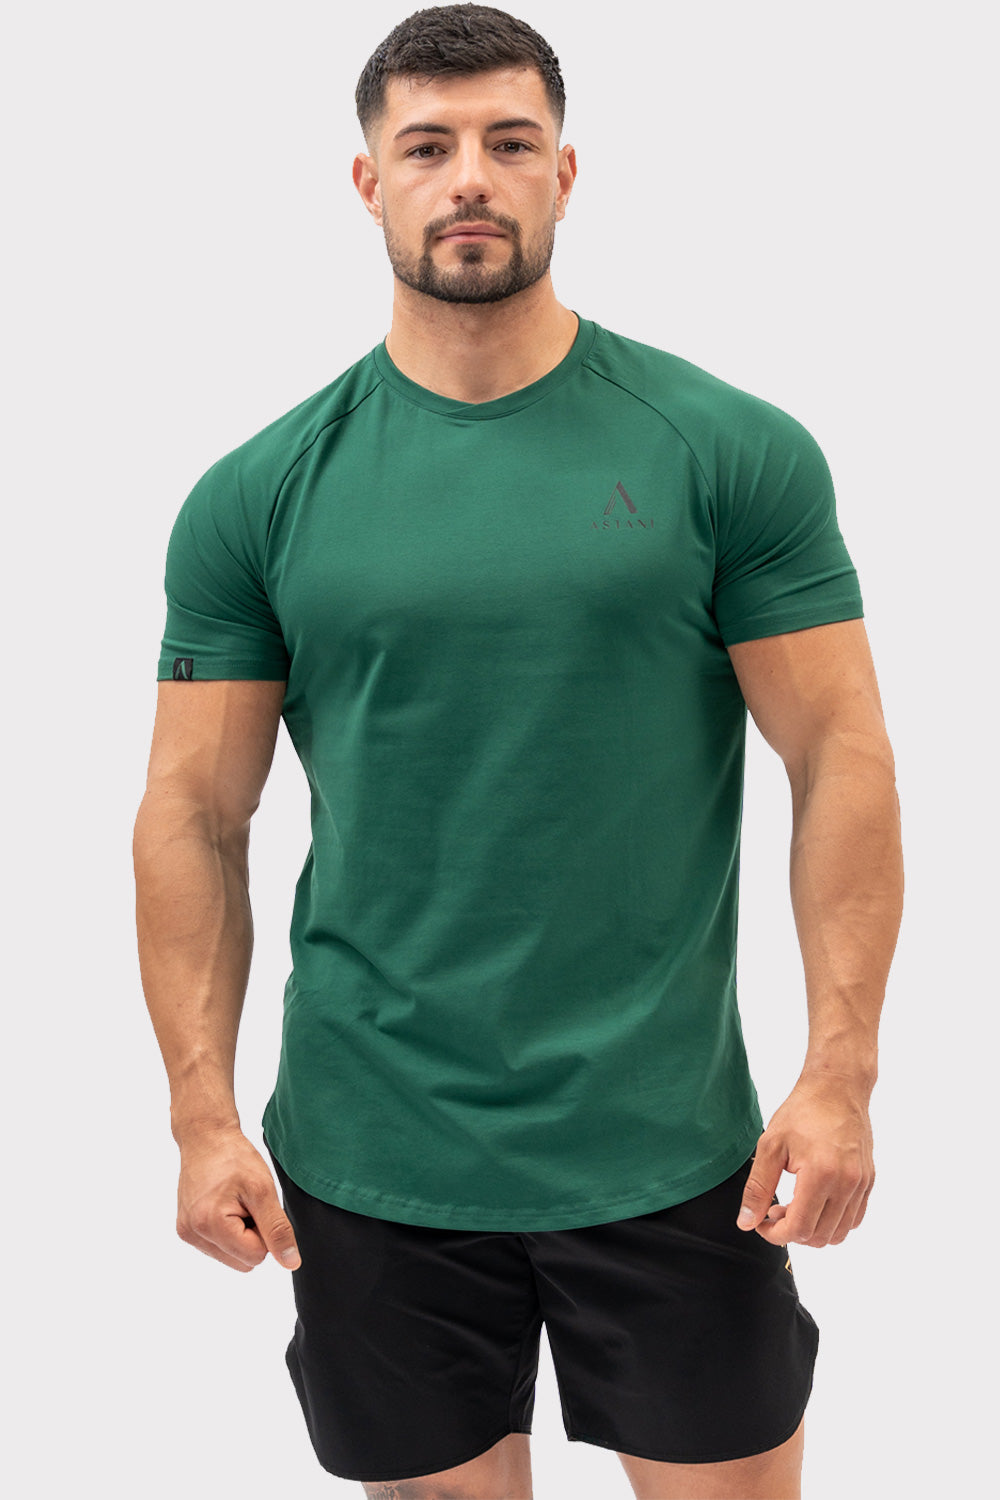 A CODE T-Shirt - Ciemnozielona